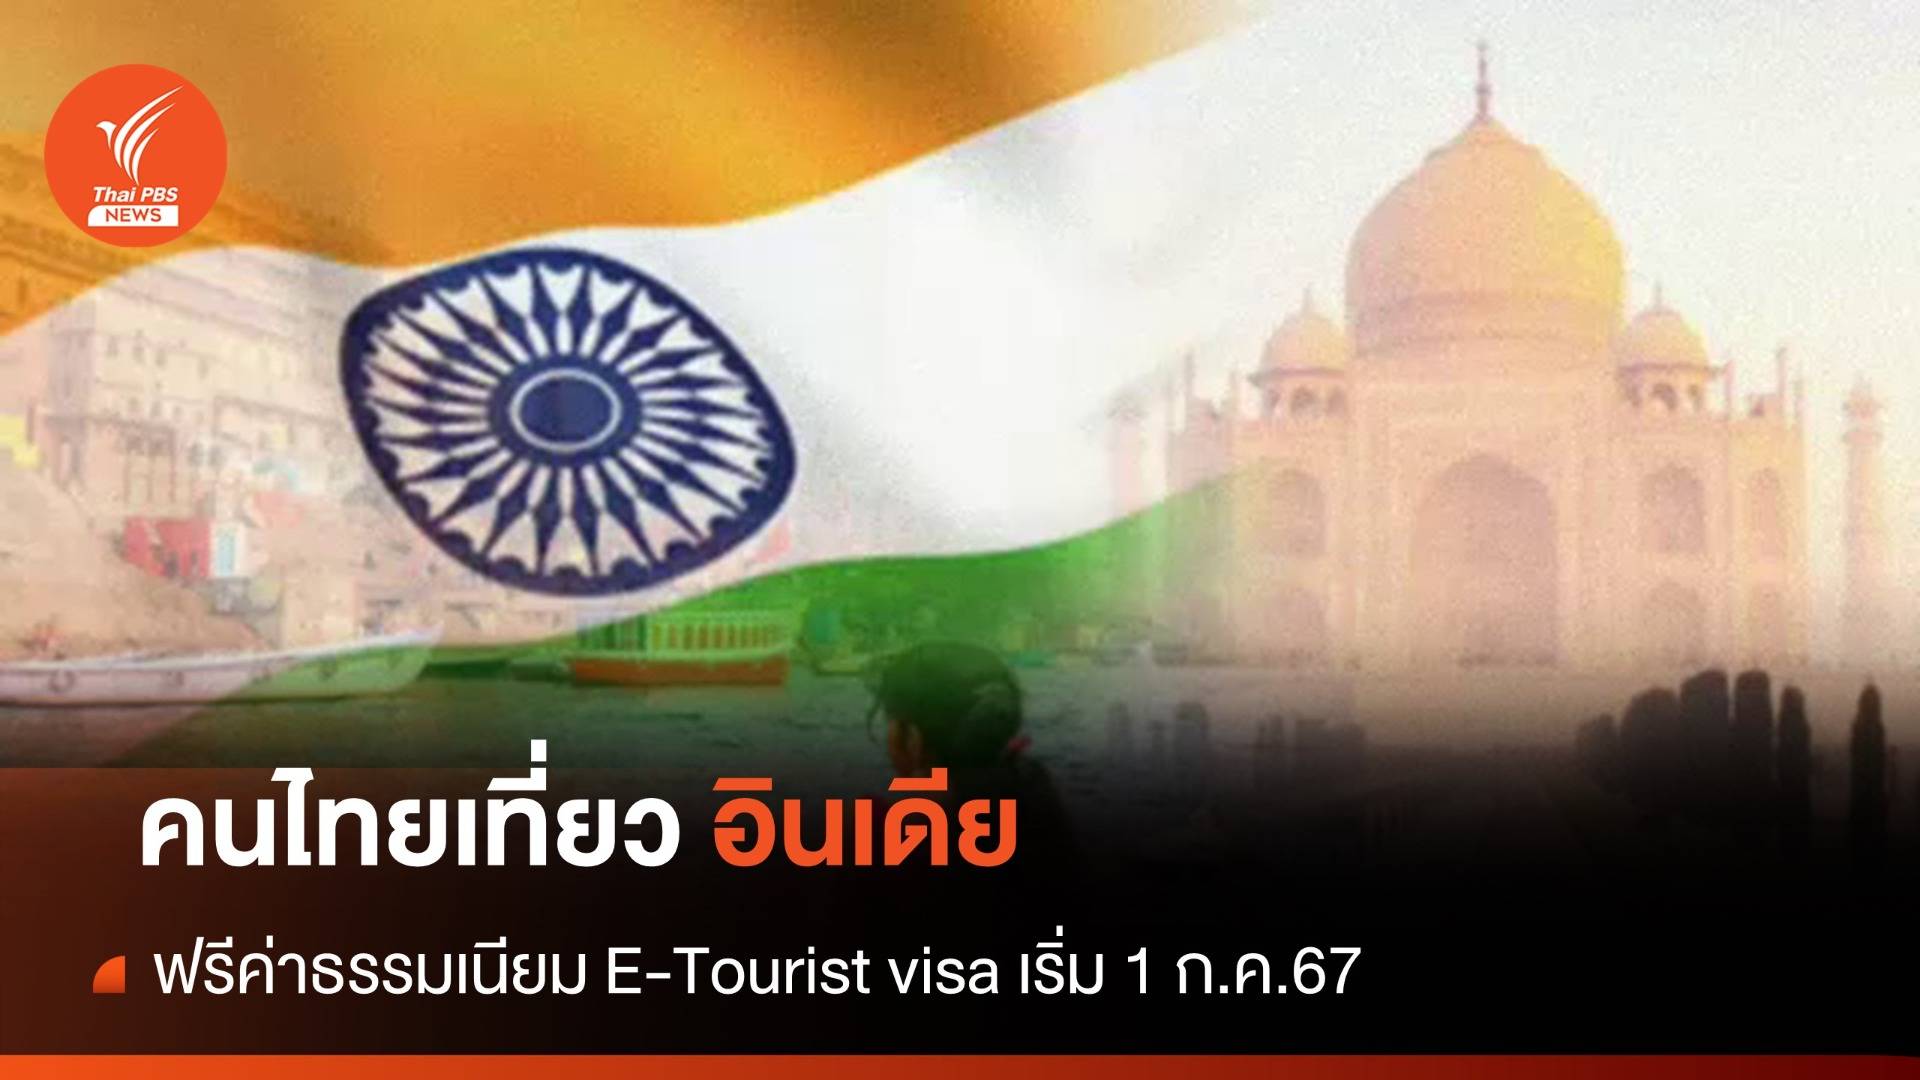 อินเดีย "ฟรีค่าวีซาอิเล็กทรอนิกส์" ให้นักท่องเที่ยวไทย 